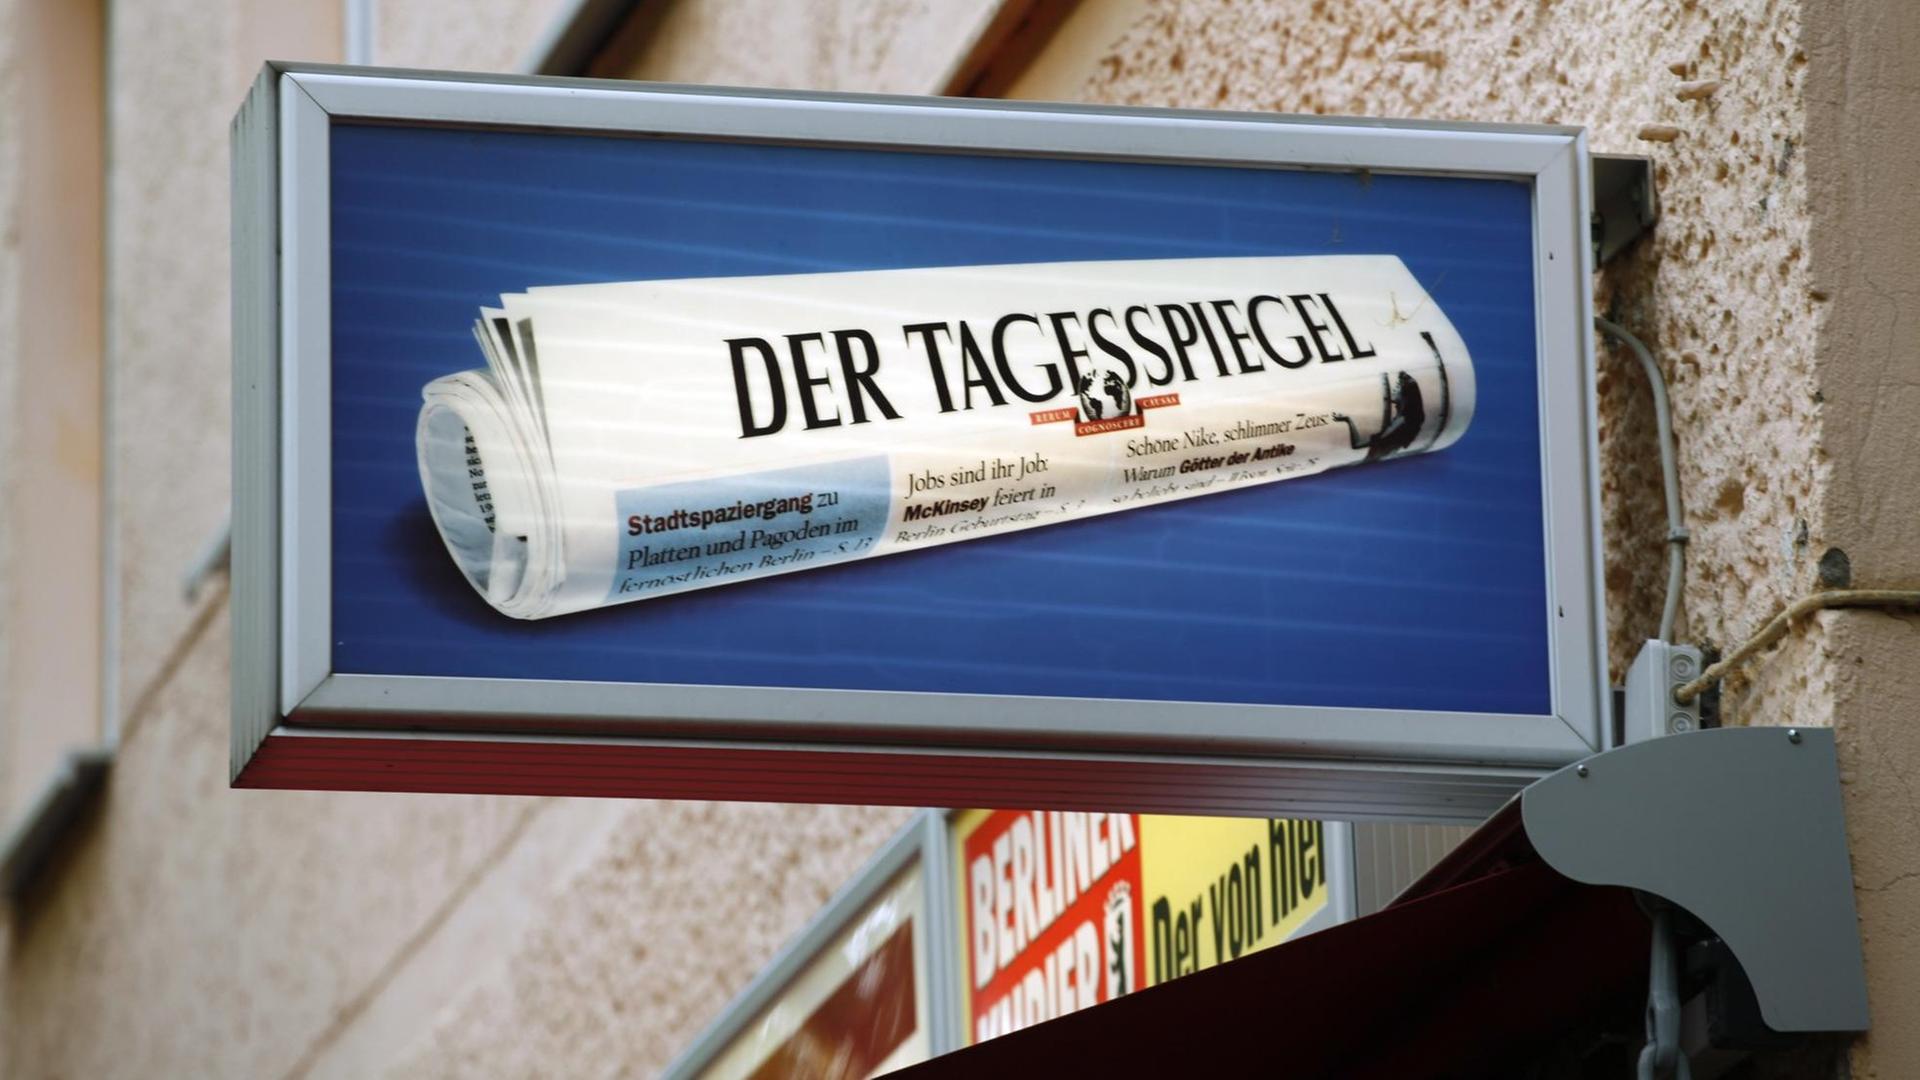 Ein Schild wirbt an einem Kiosk in Berlin für die Tageszeitung "Der Tagesspiegel".